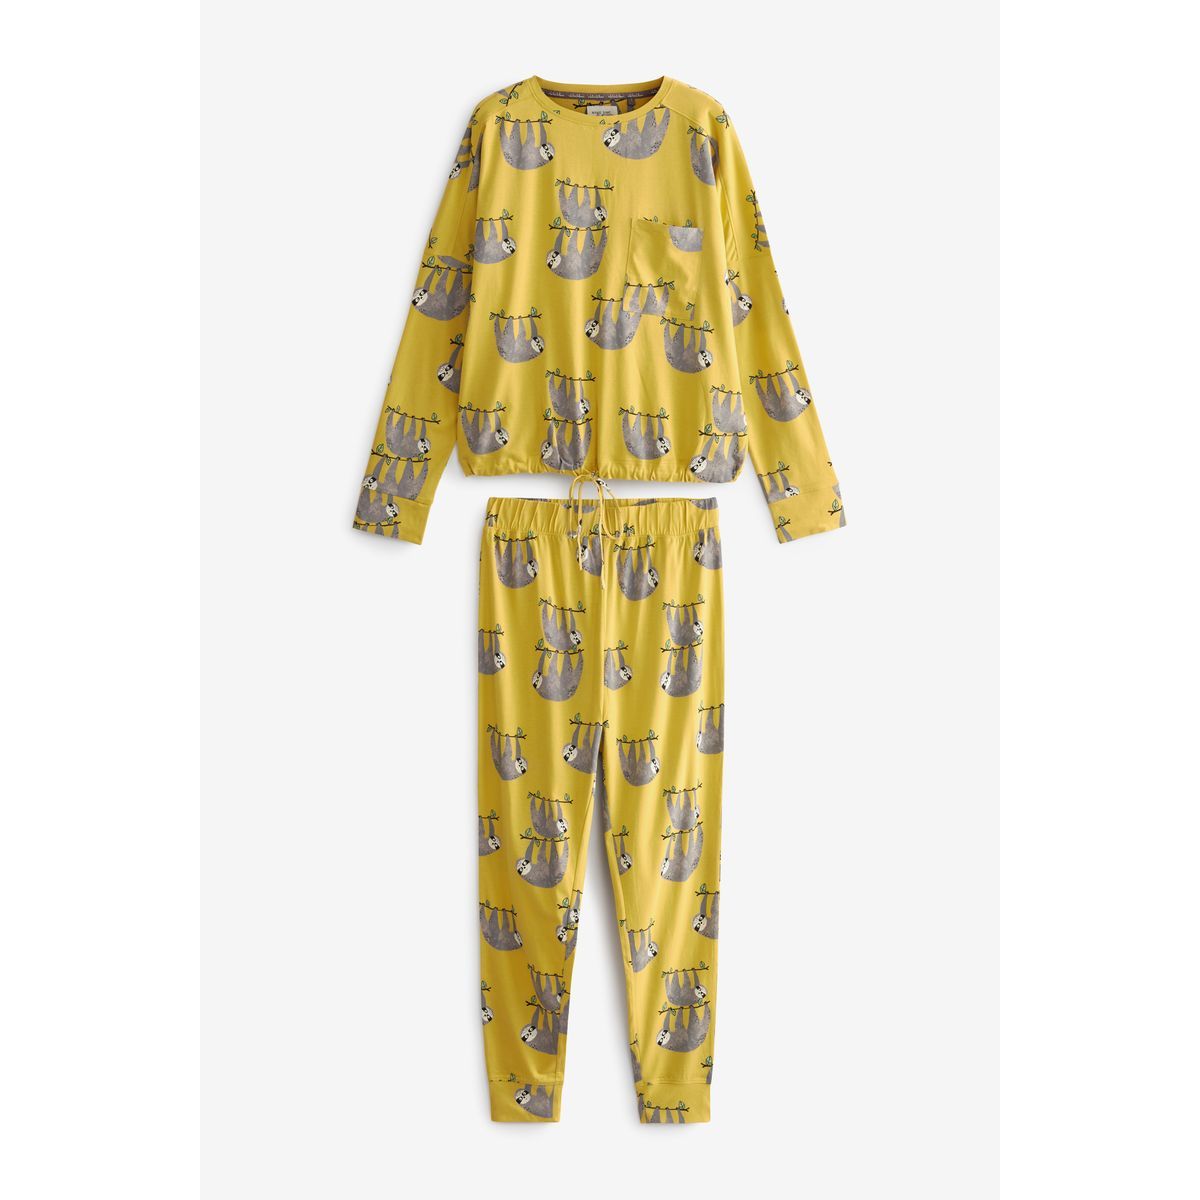 La Redoute Vêtements Sous-vêtements vêtements de nuit Pyjamas Pyjama naissance elmert jaune 